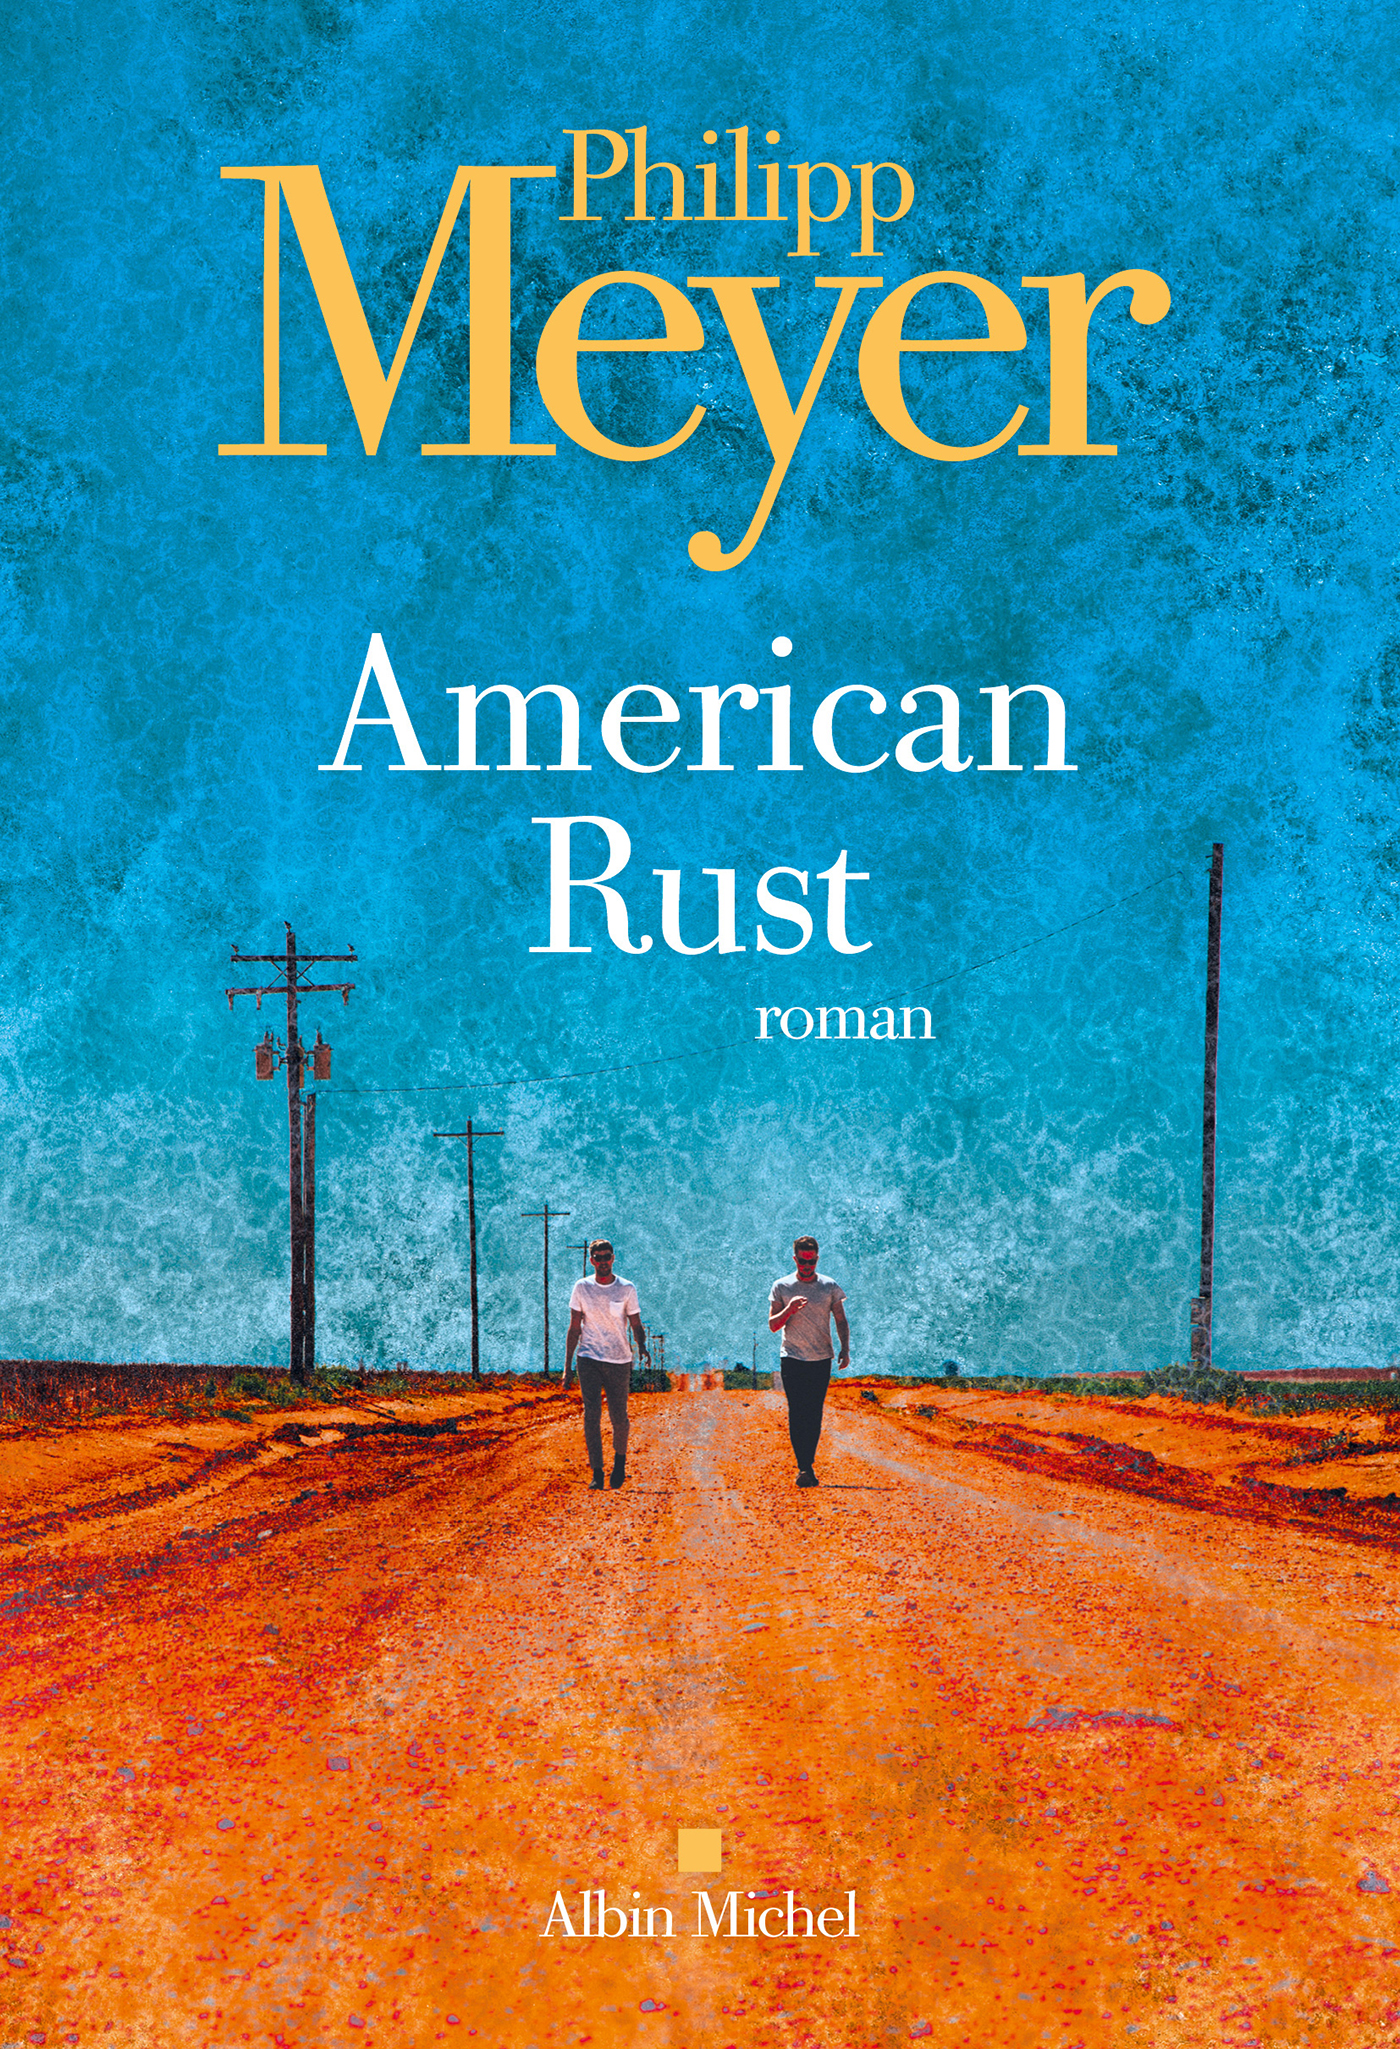 Afficher "American rust"